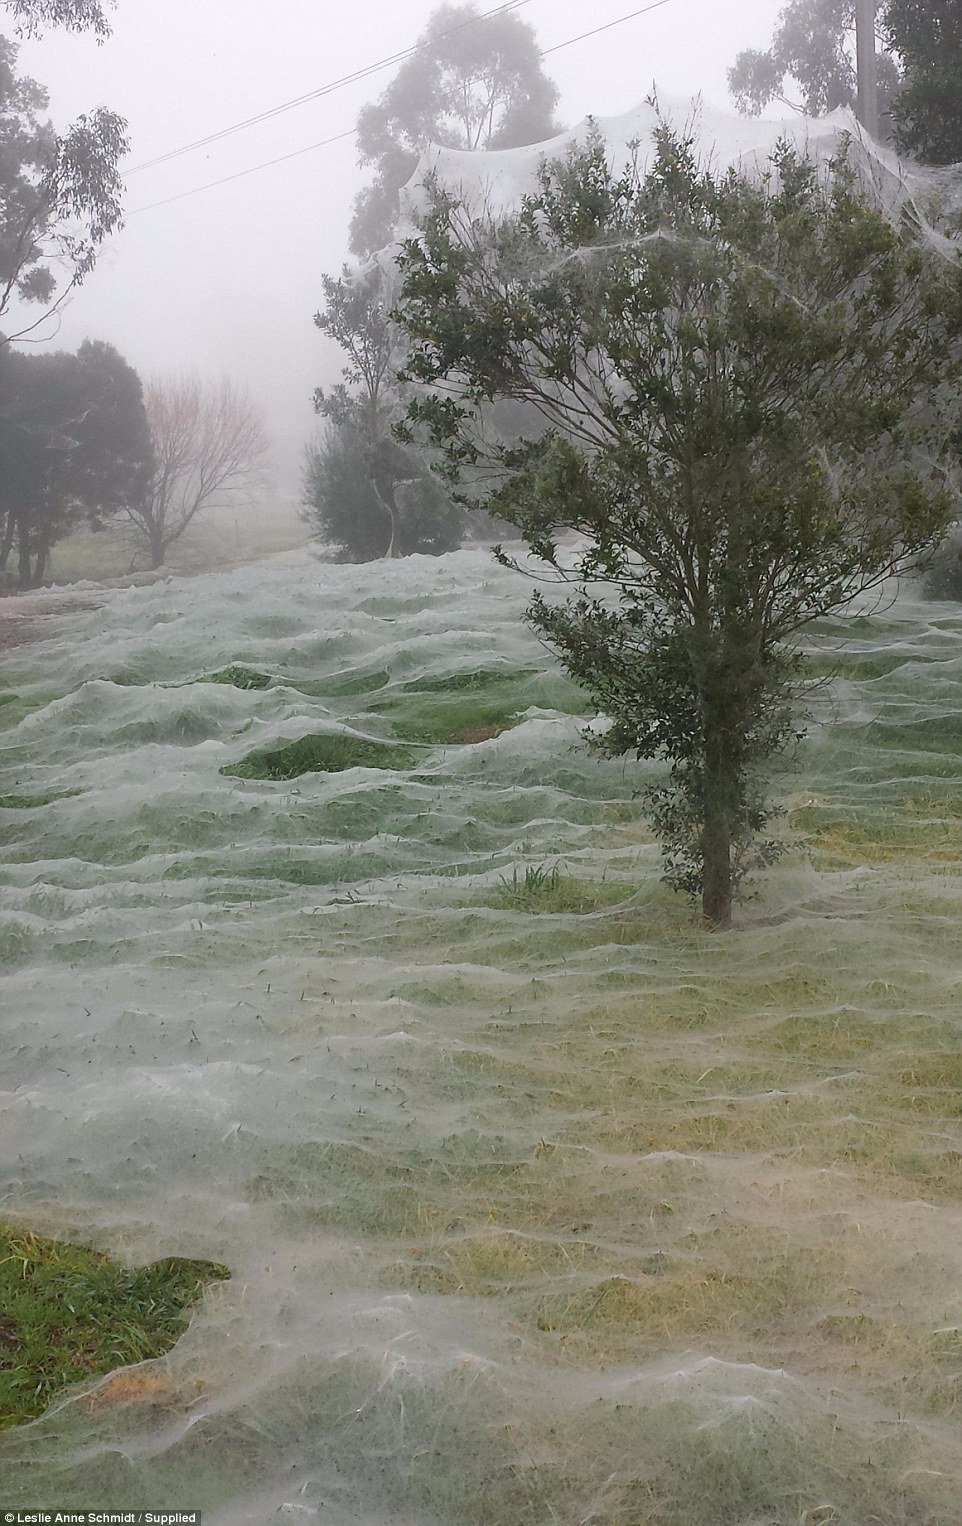 Ngeri, taman ini diselimuti jaring laba-laba, berani ke sana?